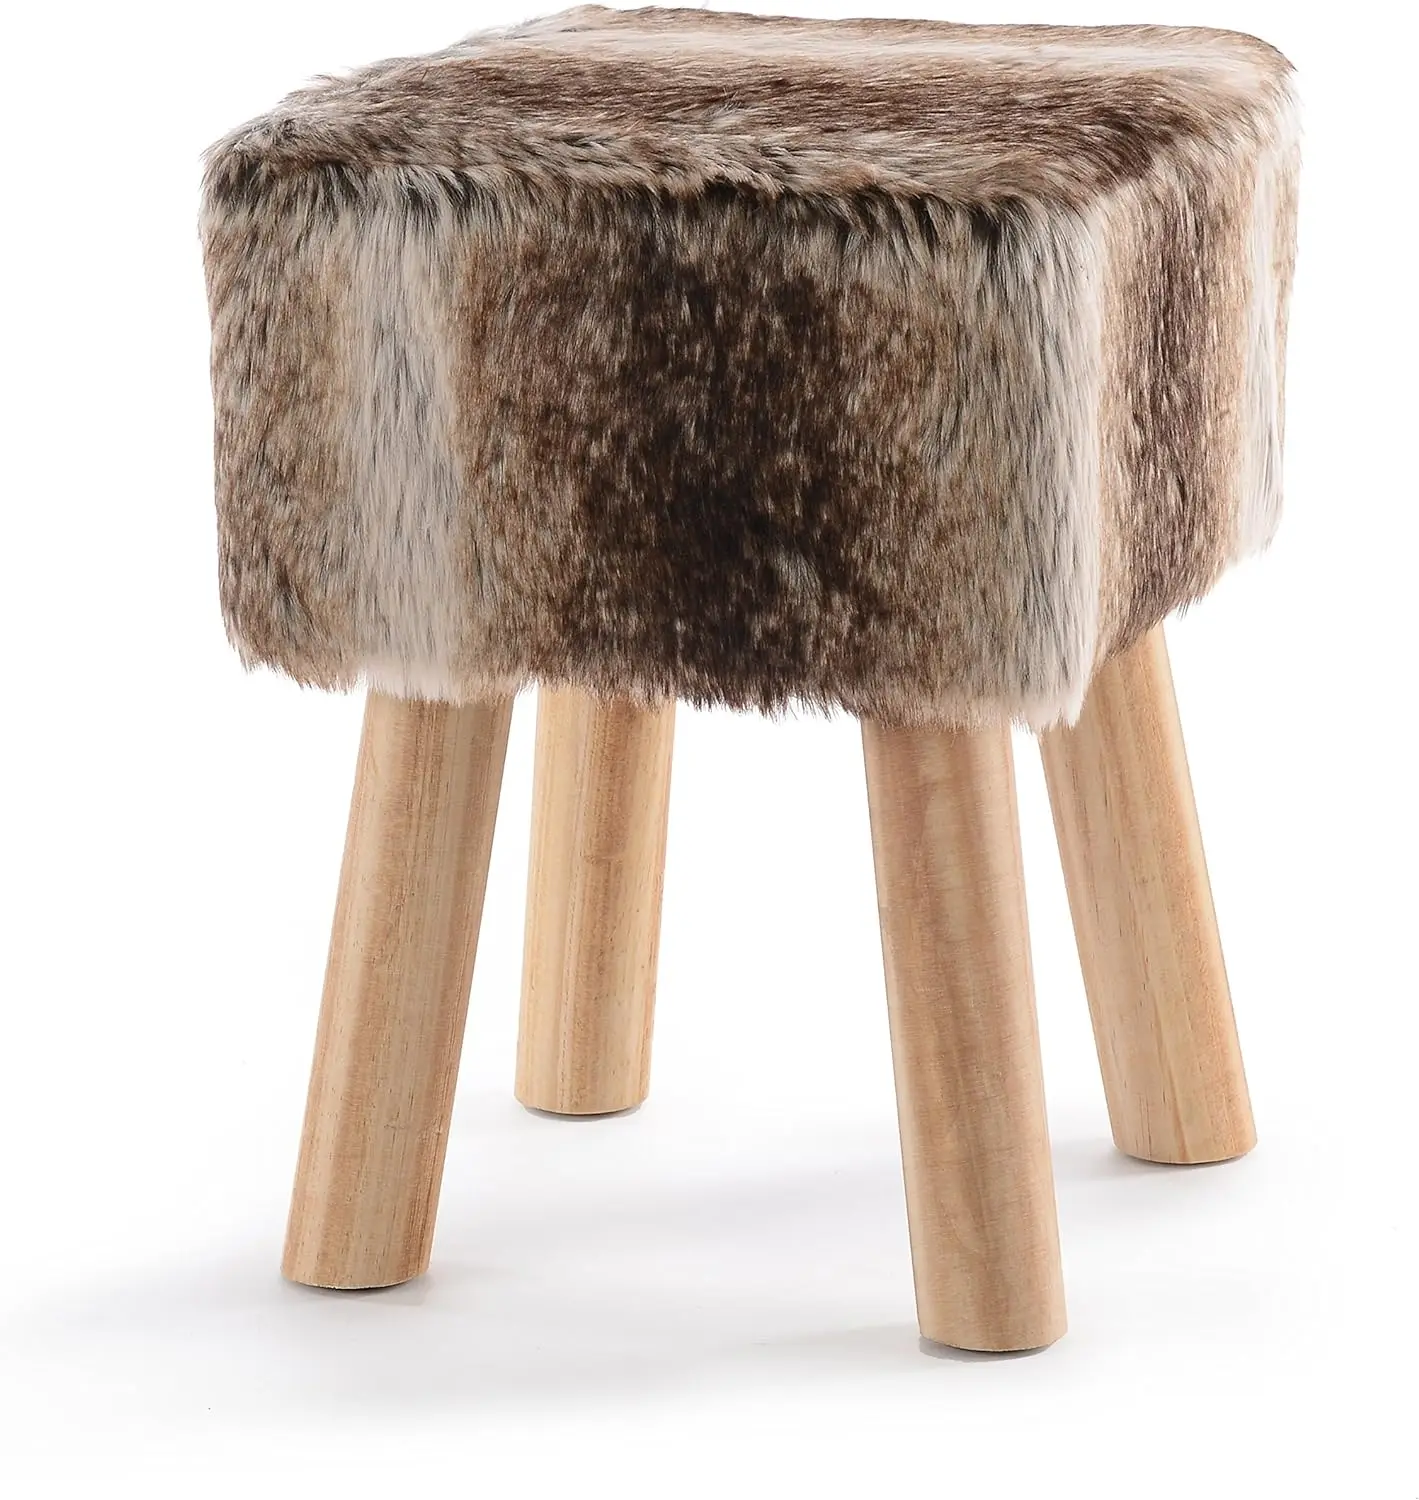 

Квадратный оттоманка | Супер мягкий декоративный стул из коричневого искусственного меха с деревянными ножками, складной стул, складной стул, пуф, оттоманка